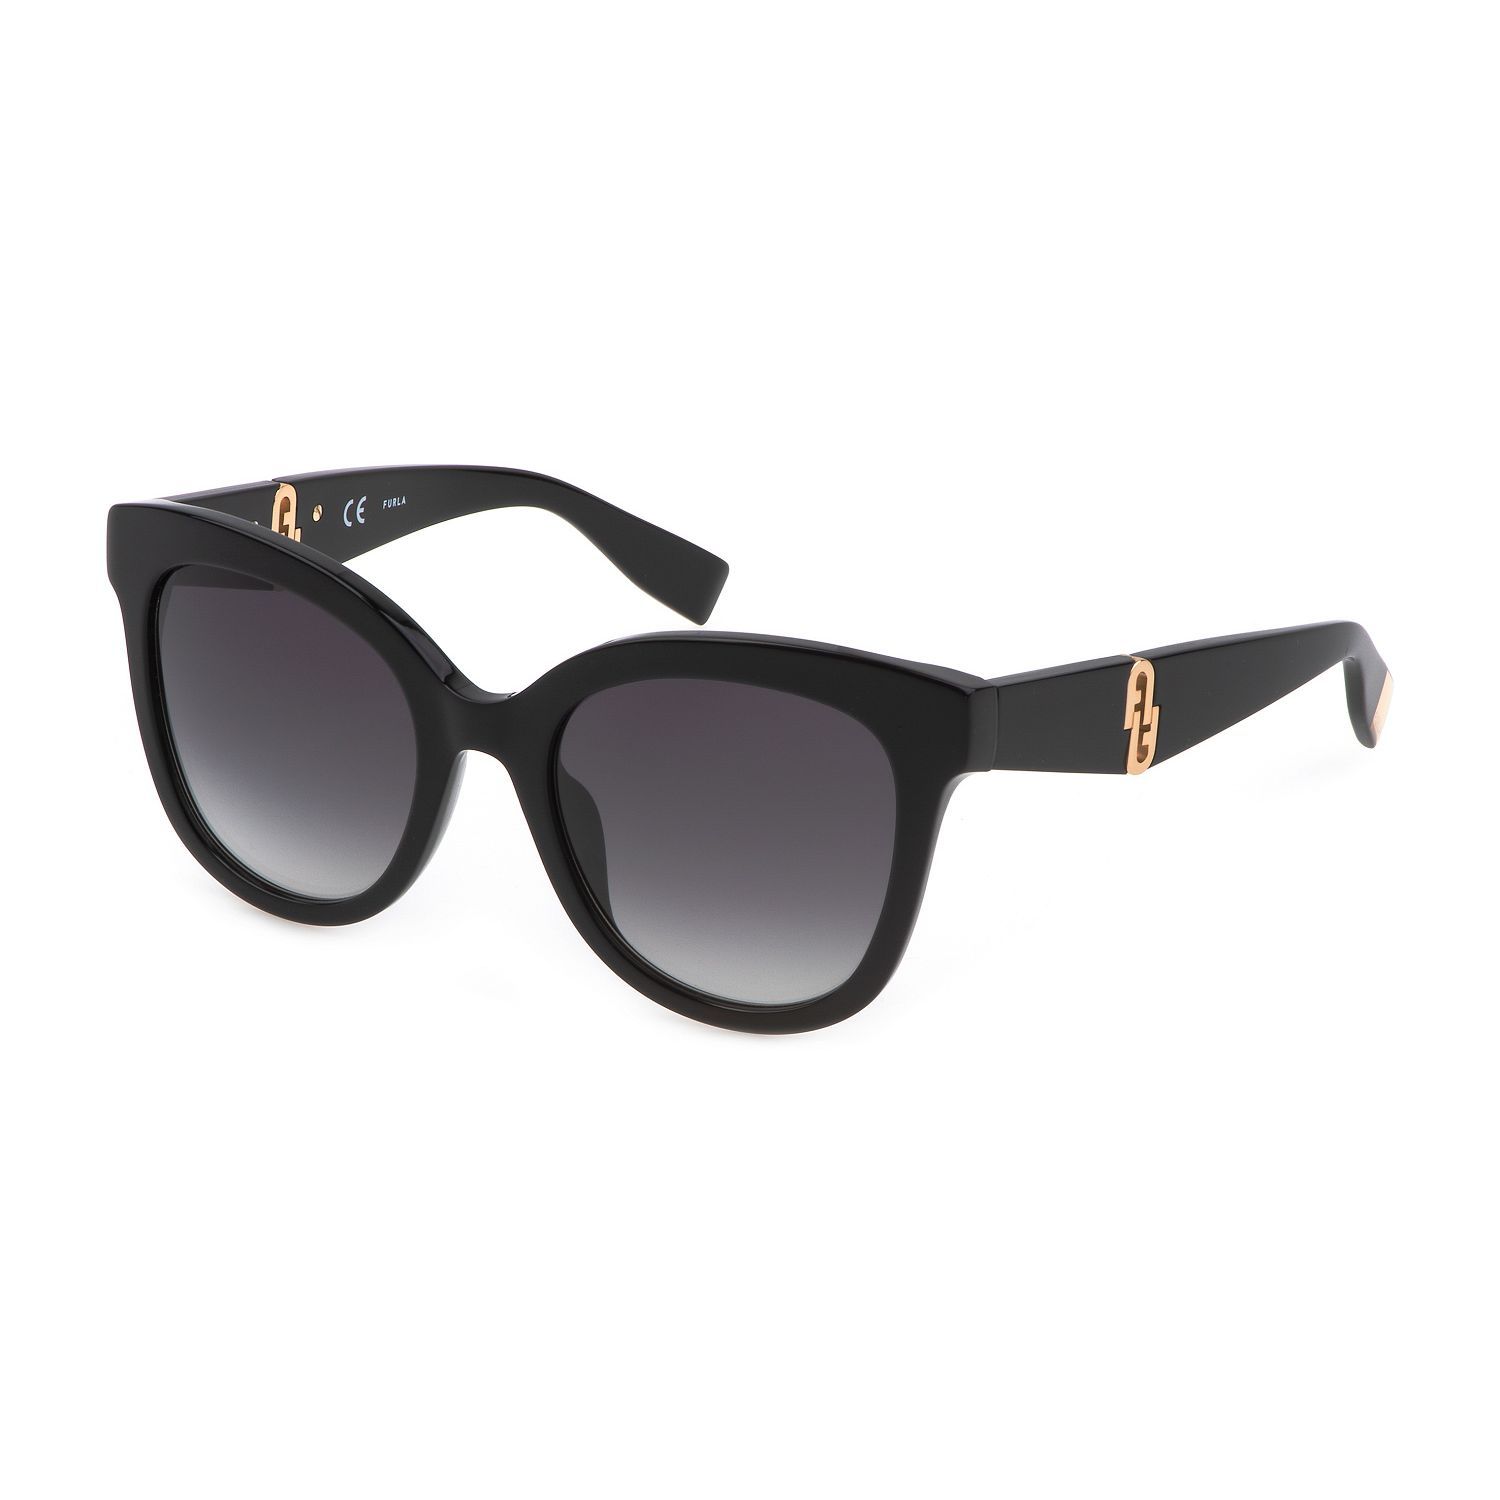 SFU595 Butterfly Sunglasses 0700 - size 52